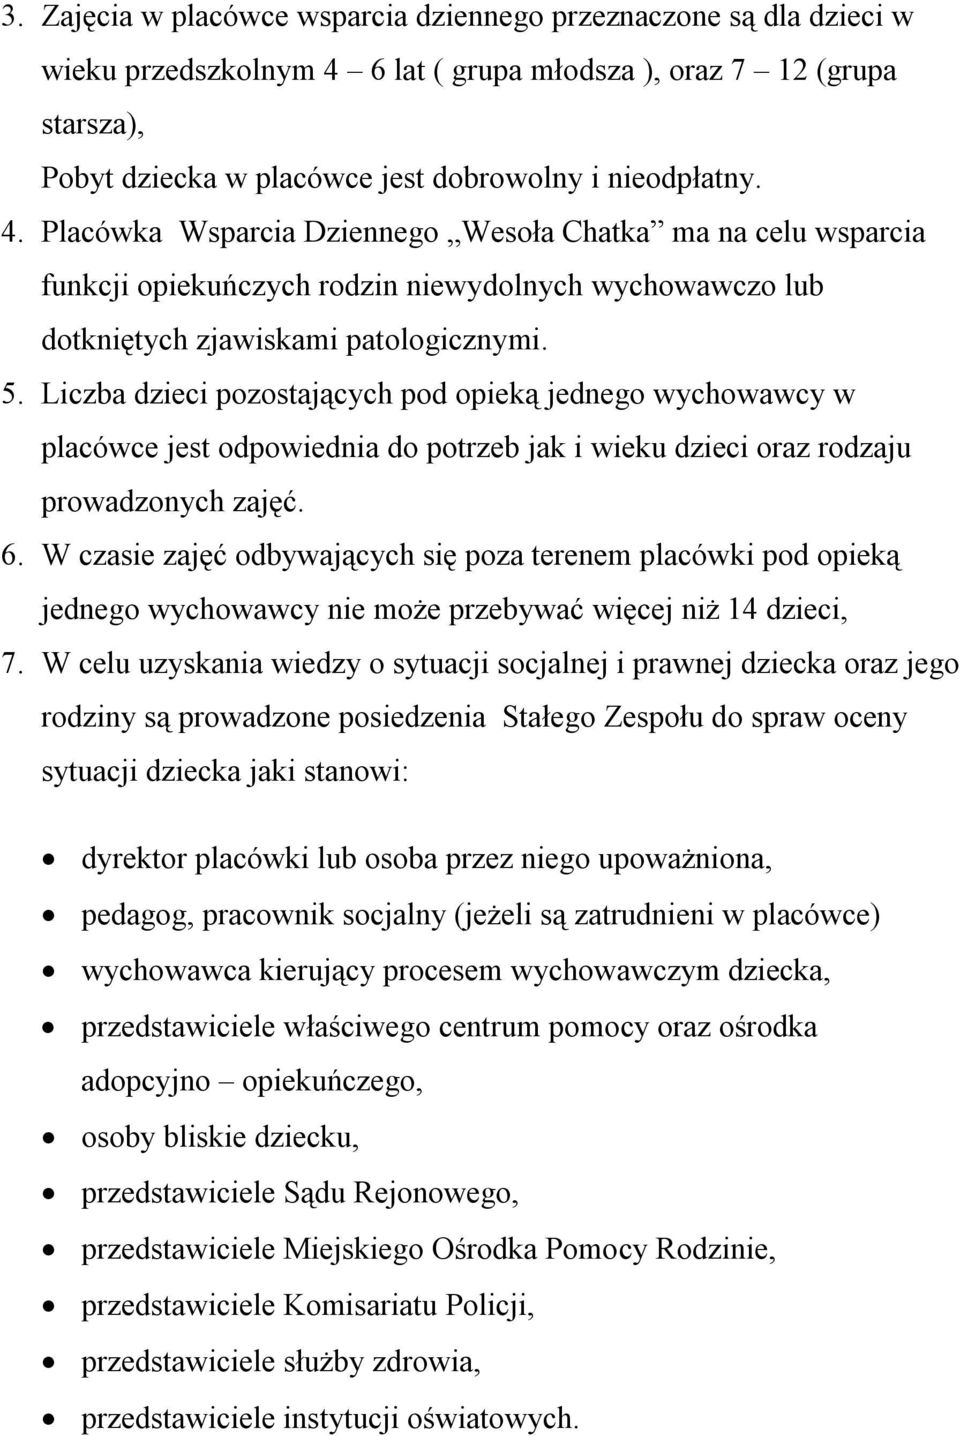 Placówka Wsparcia Dzienneg Wesła Chatka ma na celu wsparcia funkcji piekuńczych rdzin niewydlnych wychwawcz lub dtkniętych zjawiskami patlgicznymi. 5.